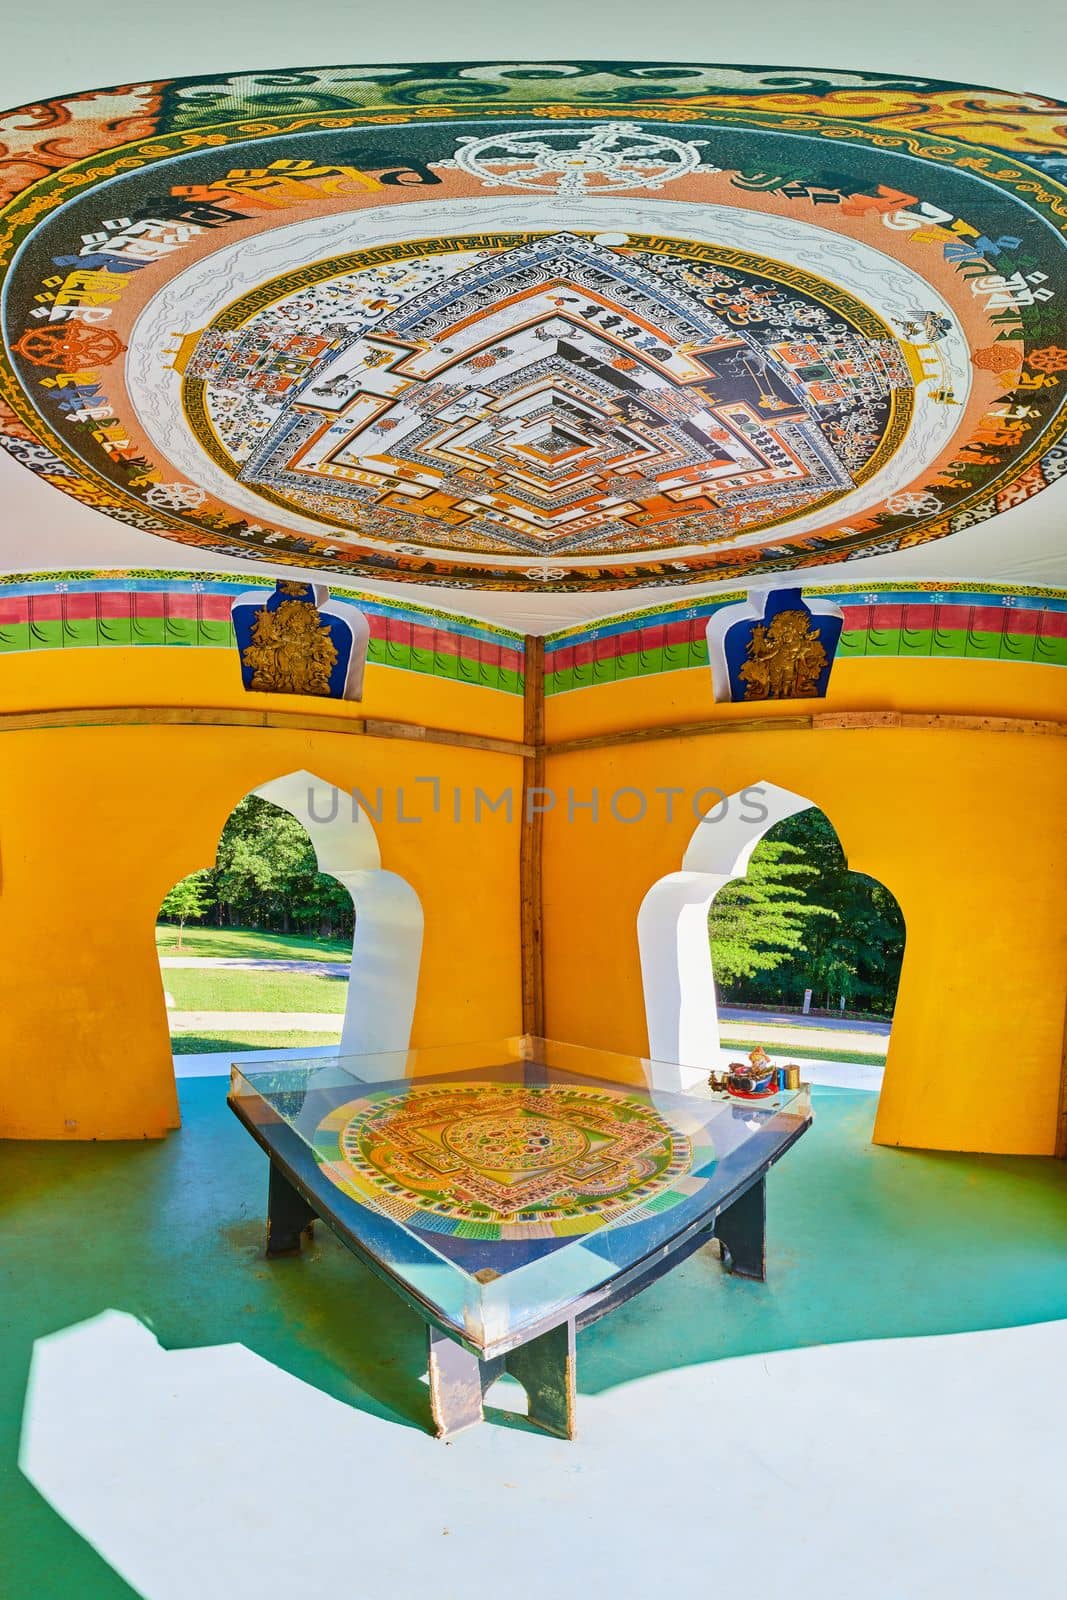 Image of Artwork inside of Tibetan Mongolian Buddhist Chorten